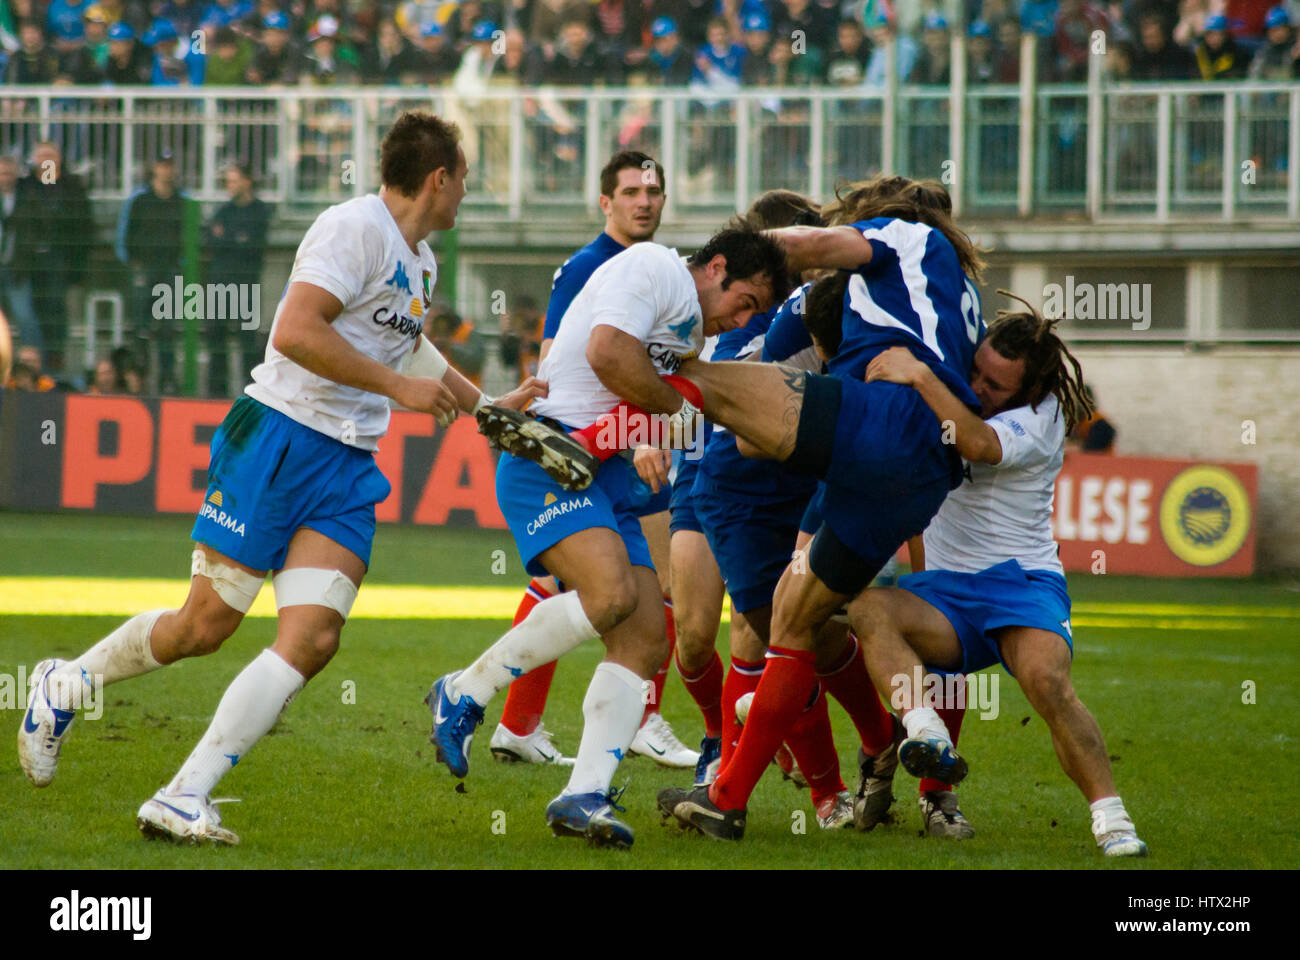 ROM, ITALIEN - 3. FEBRUAR 2007.  Rugby Six Nations cup Italien-Frankreich. Spieler in Aktion Scrum auf Spielplatz Stockfoto